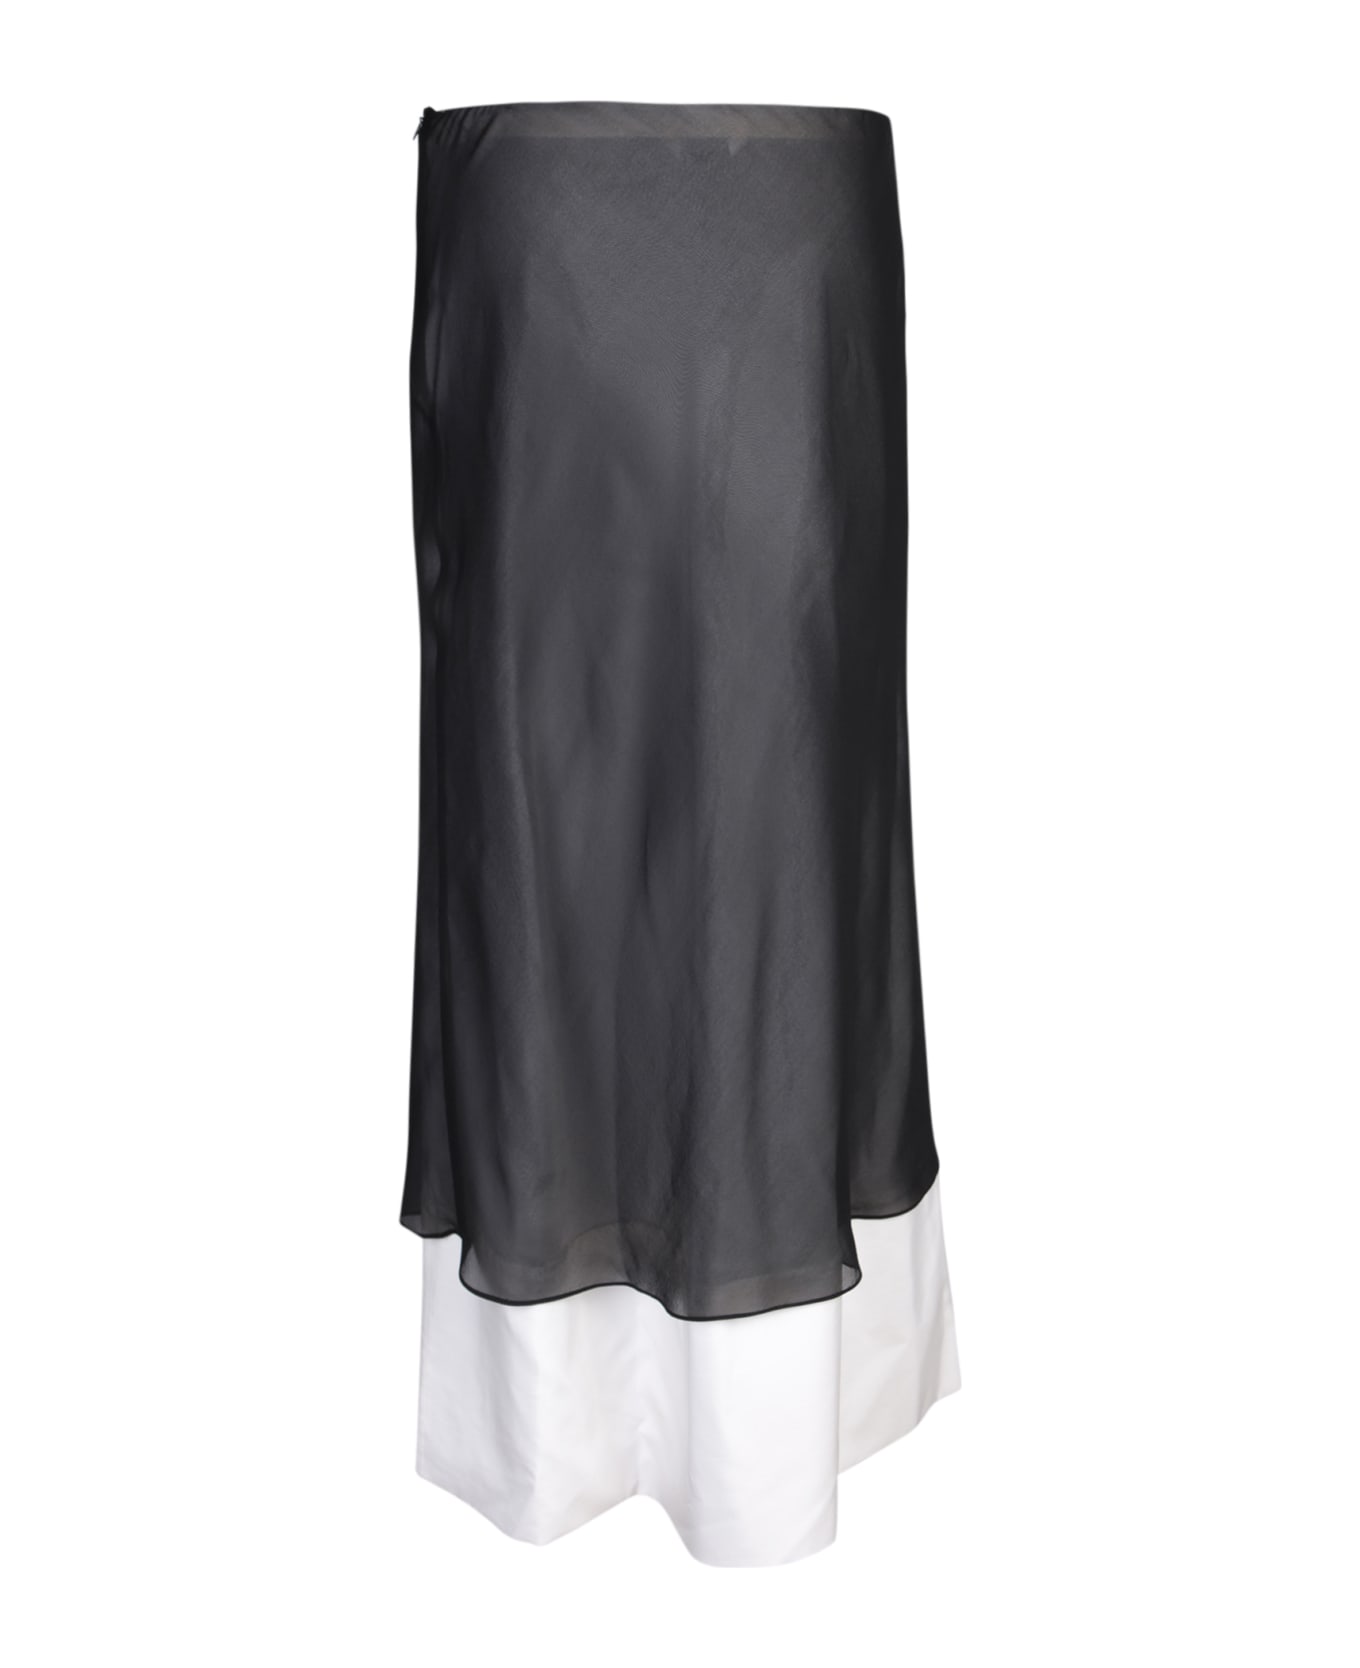 Quira Double Underskirt Skirt In Black/white - Black スカート